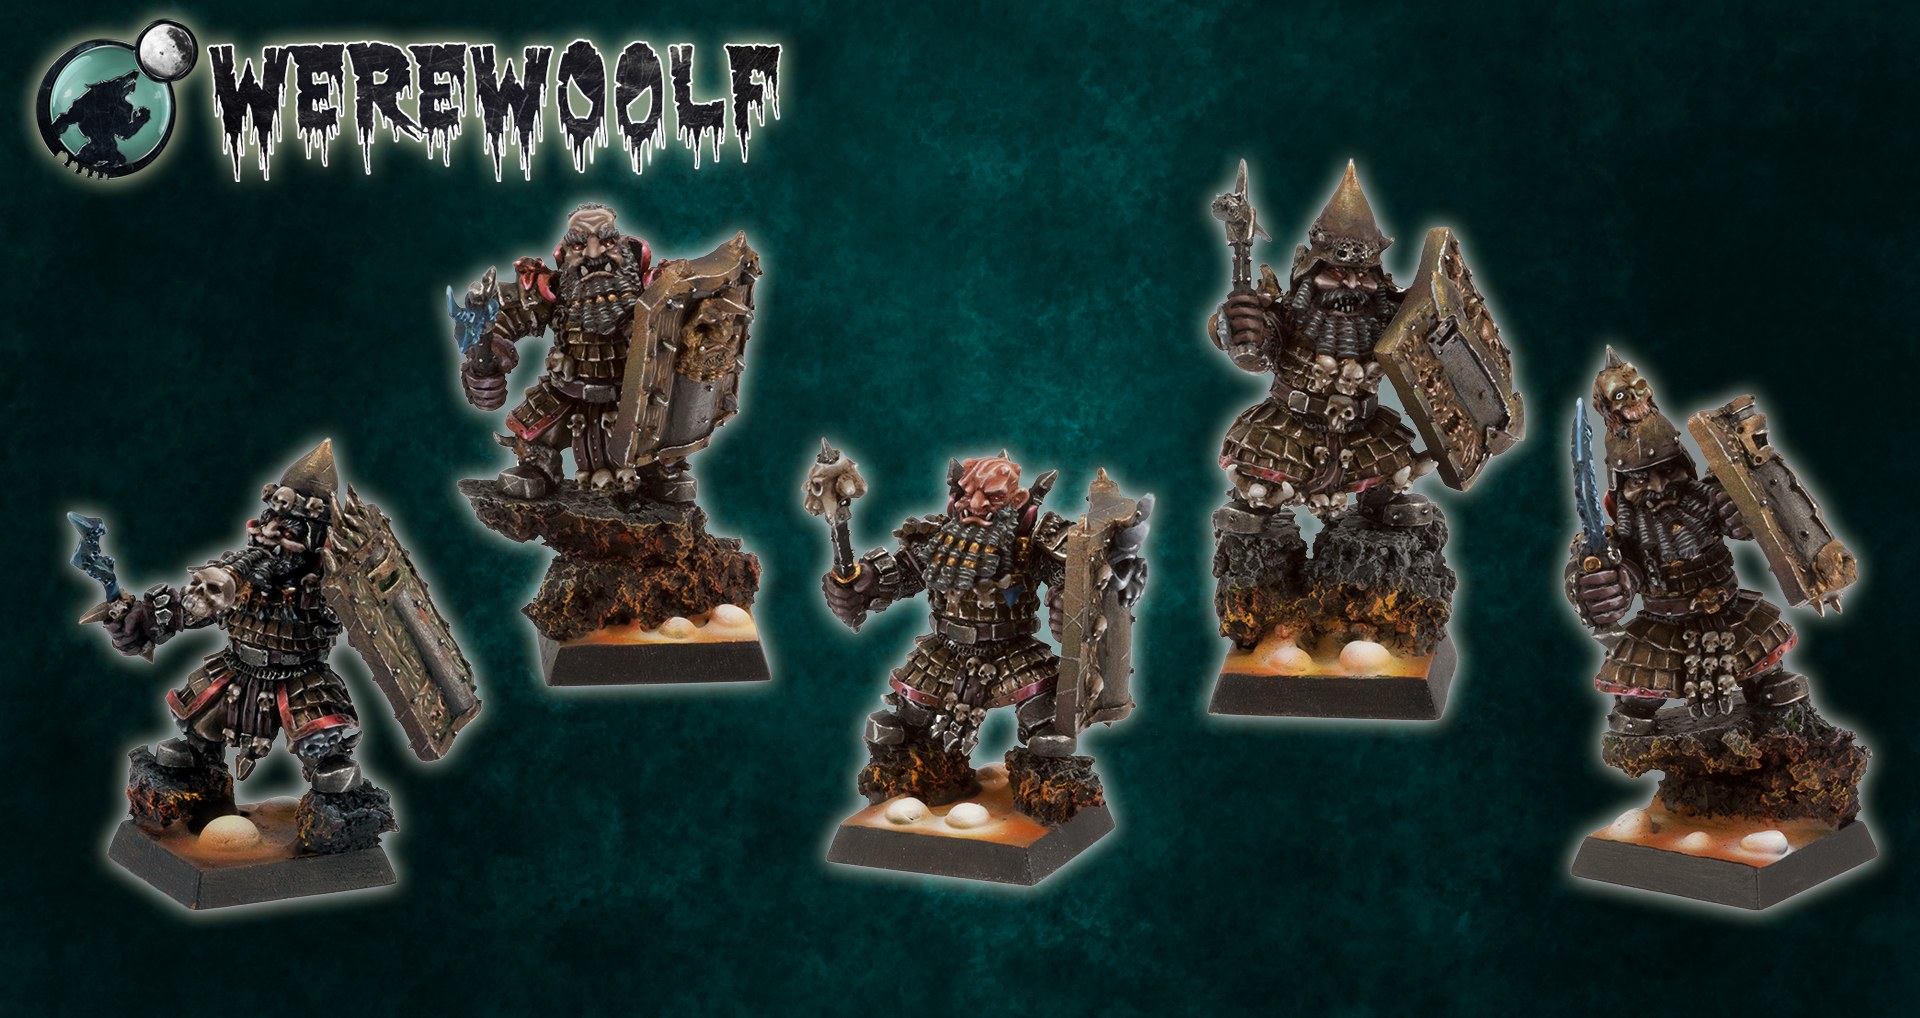 Werewoolf Miniatures: Sons of Adramelech